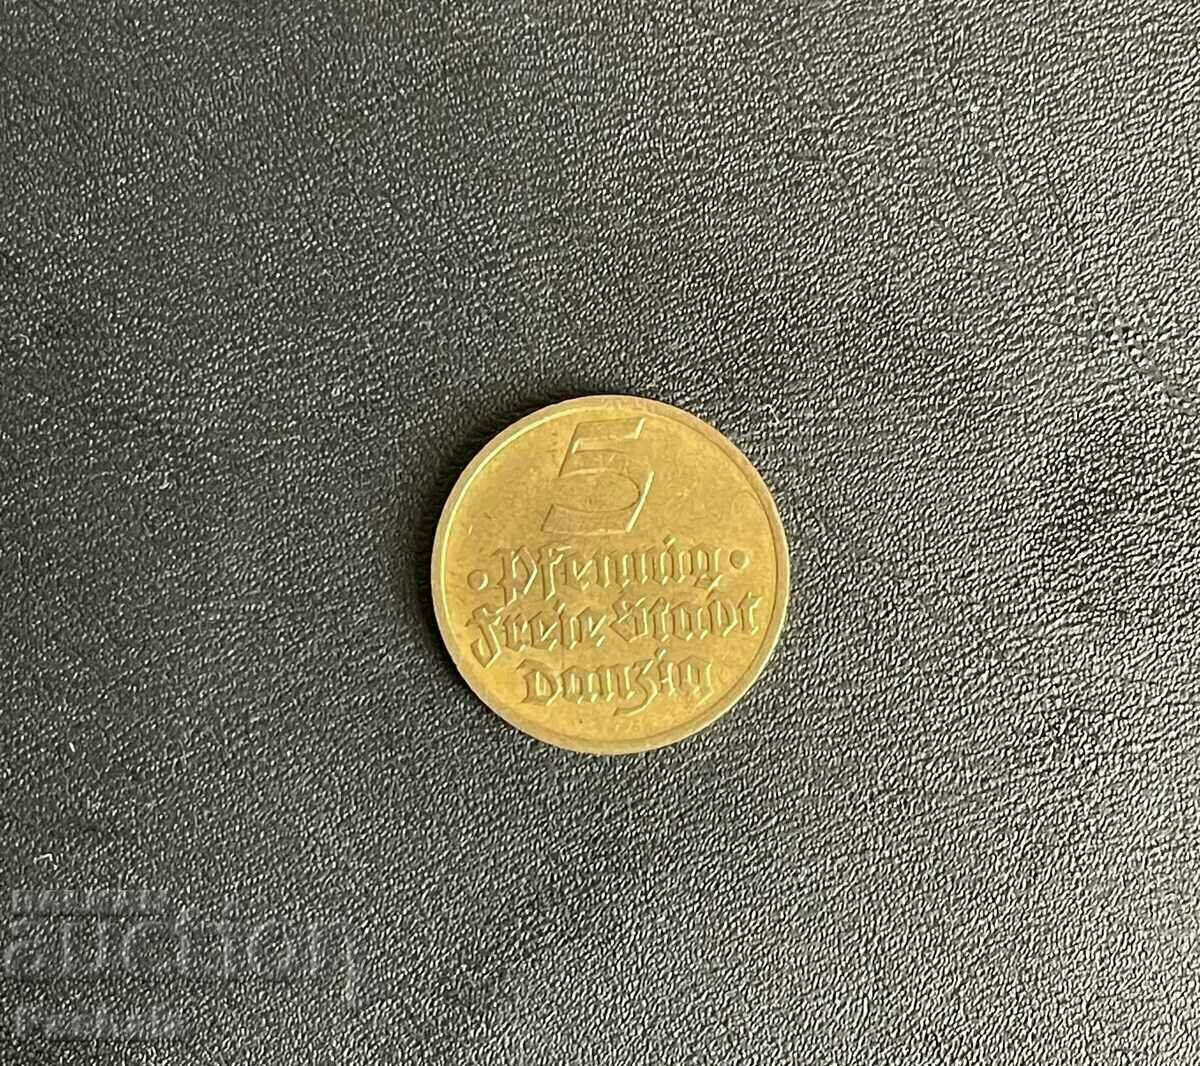 Danzig 5 Pfennig 1932